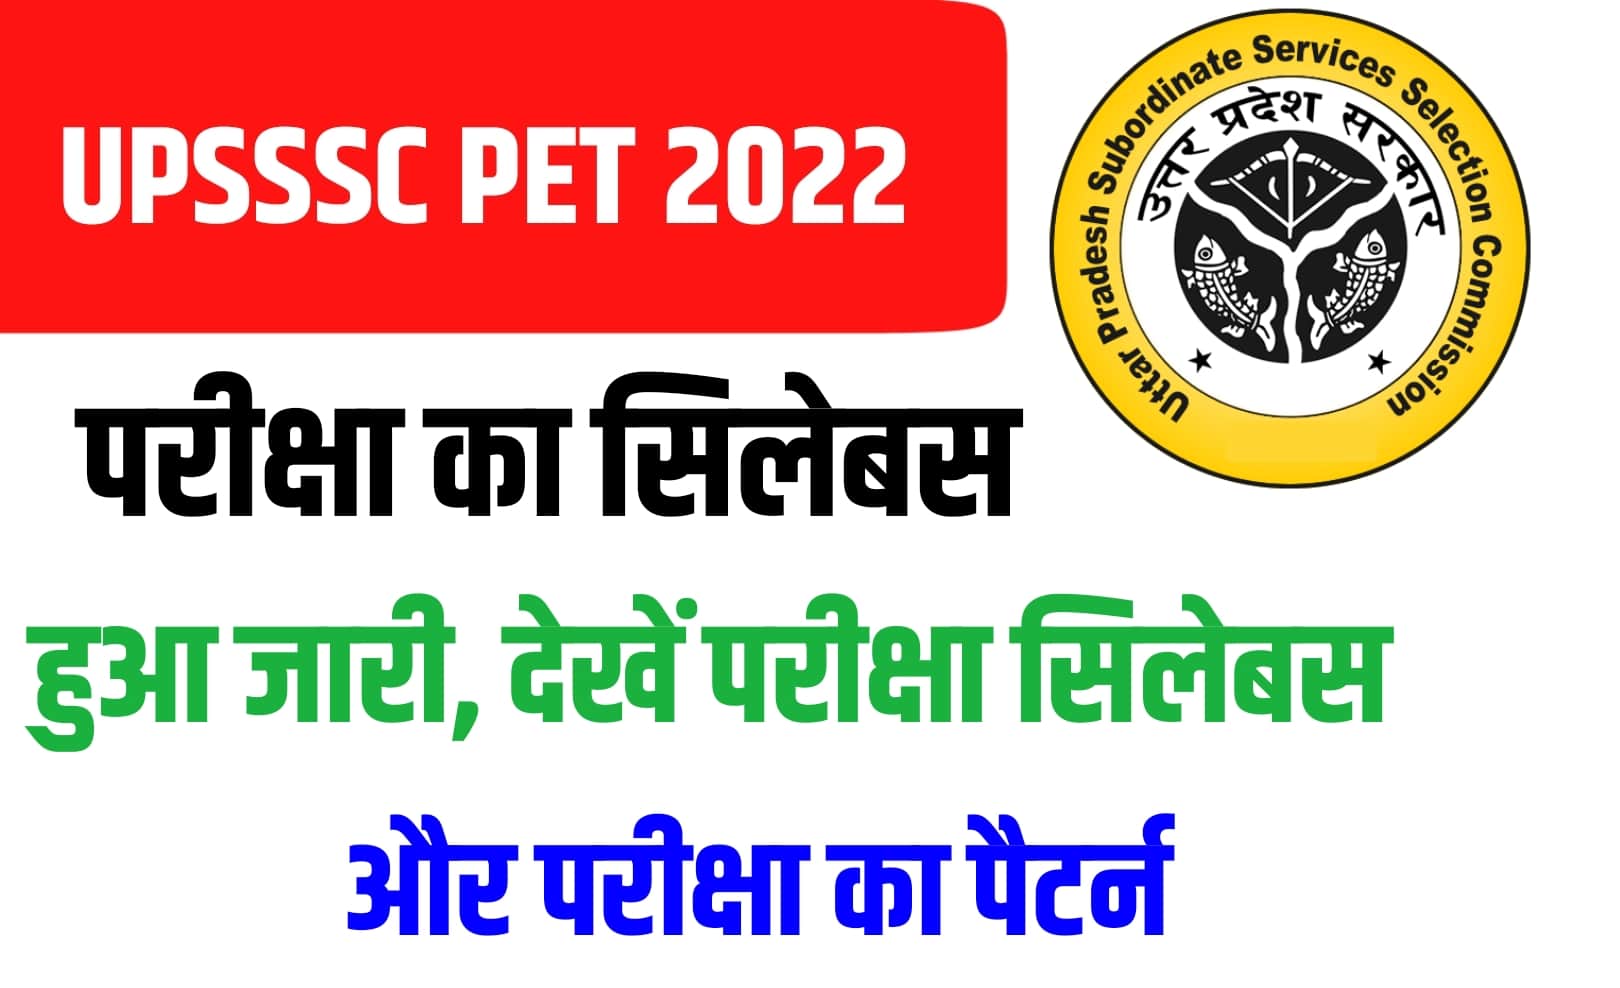 UPSSSC PET Syllabus 2022 In Hindi : यहां देखें पीईटी परीक्षा का सिलेबस और पैटर्न